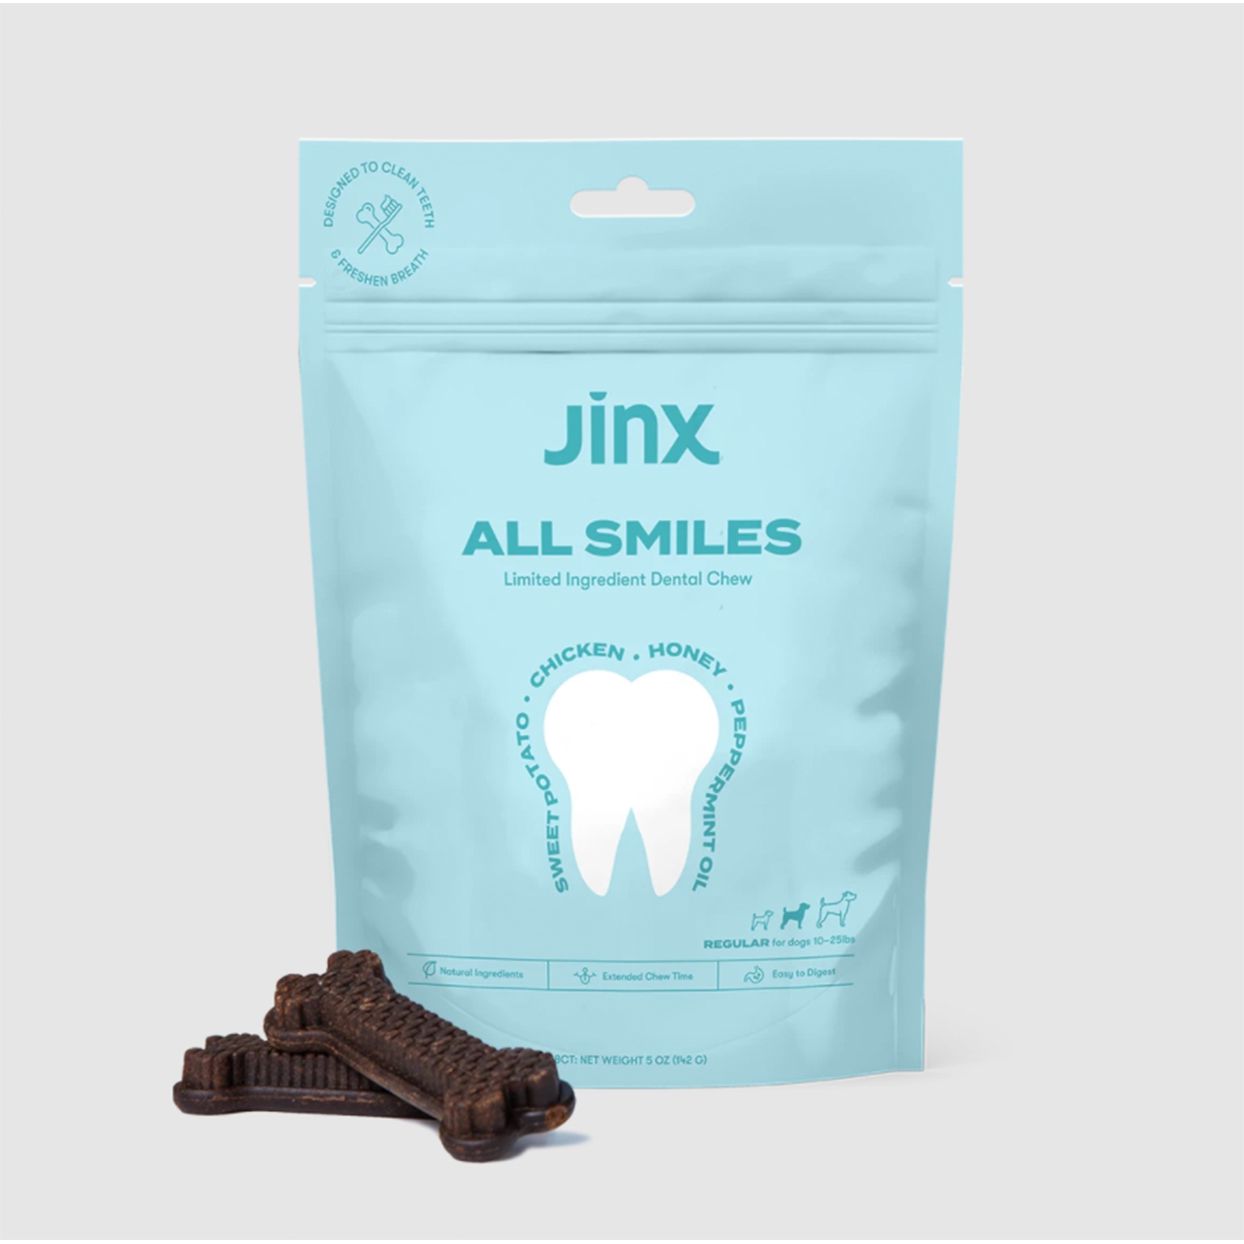 Jinx dental chews